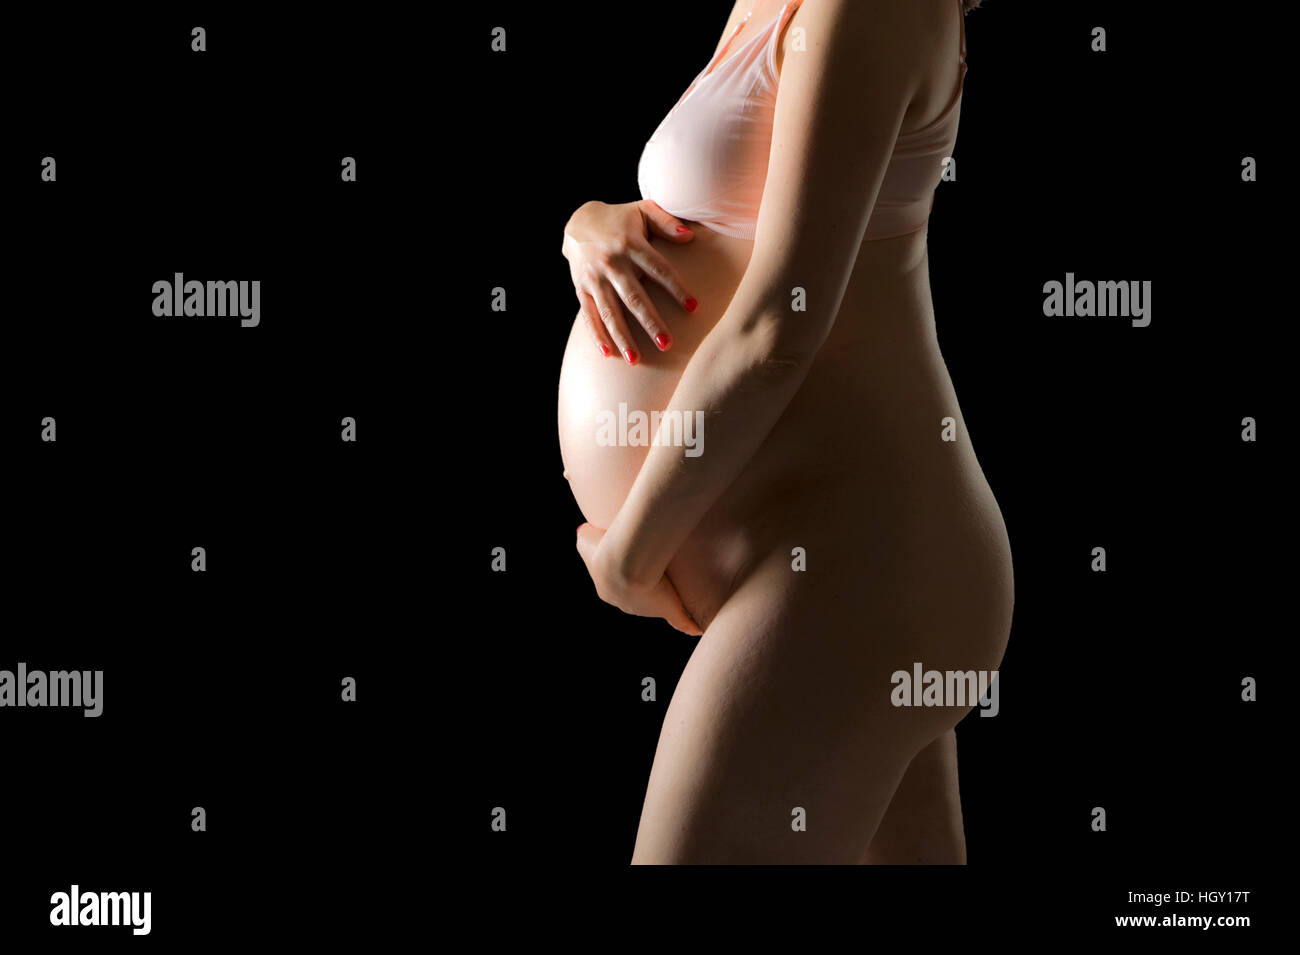 Femme enceinte est holding her belly Banque D'Images